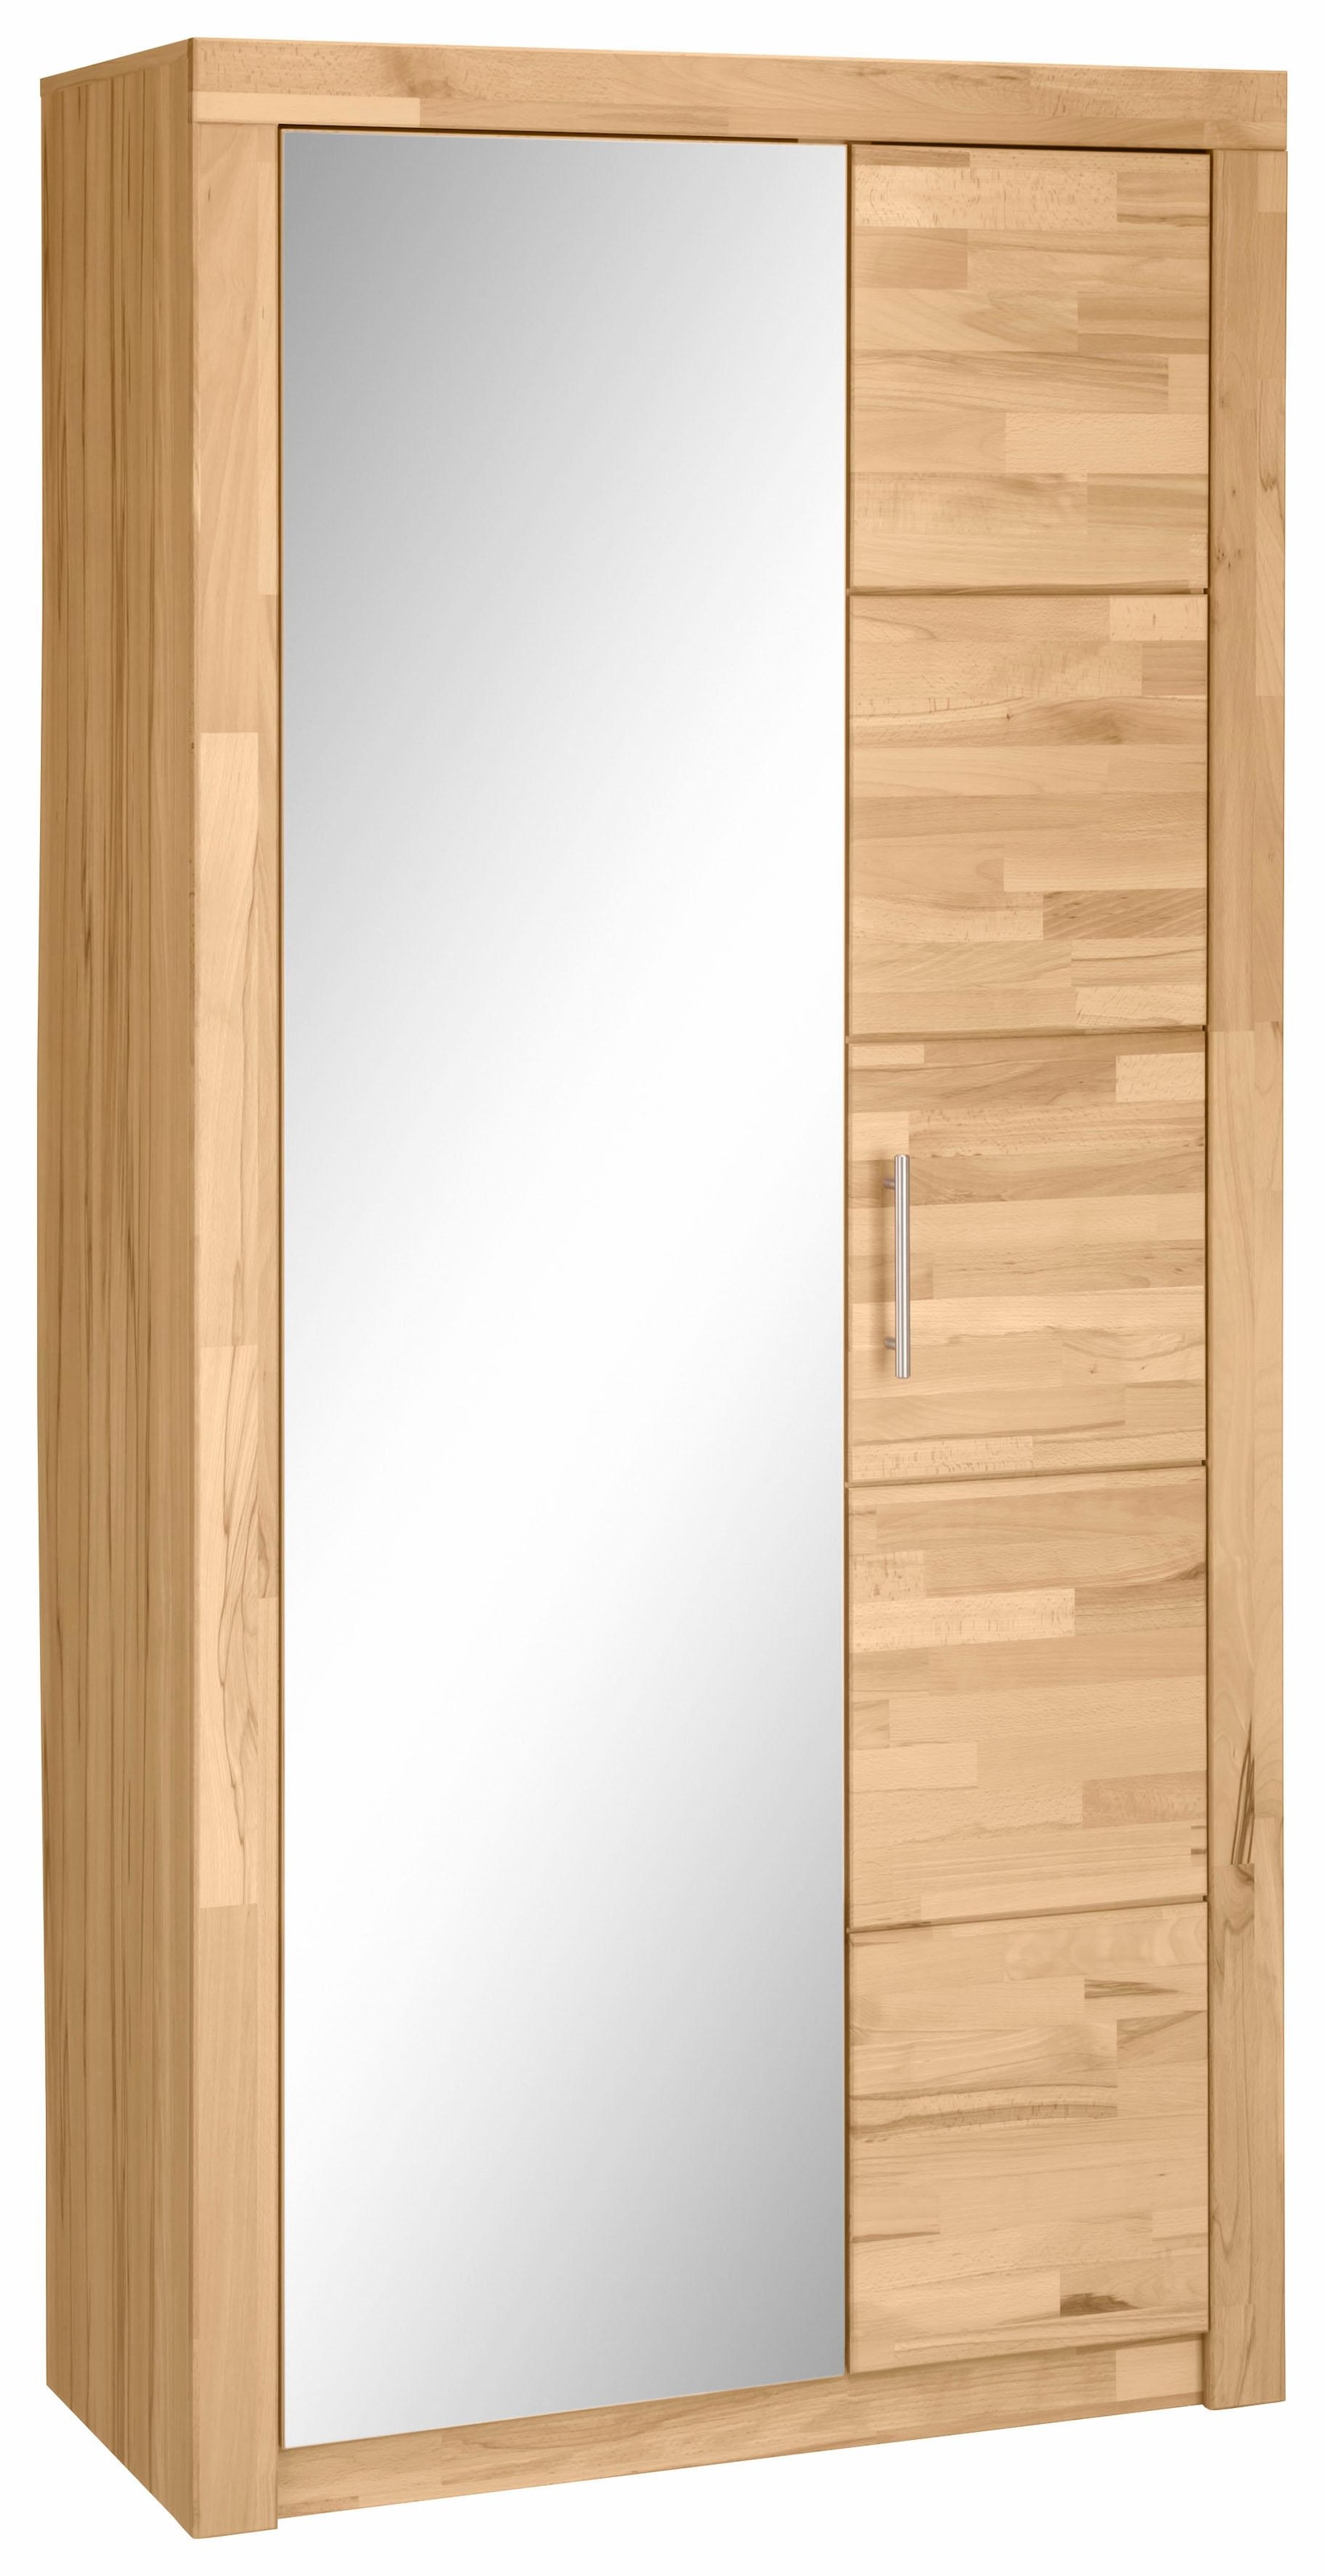 VOGL Spiegel Garderobenschrank »Simone«, mit Möbelfabrik kaufen